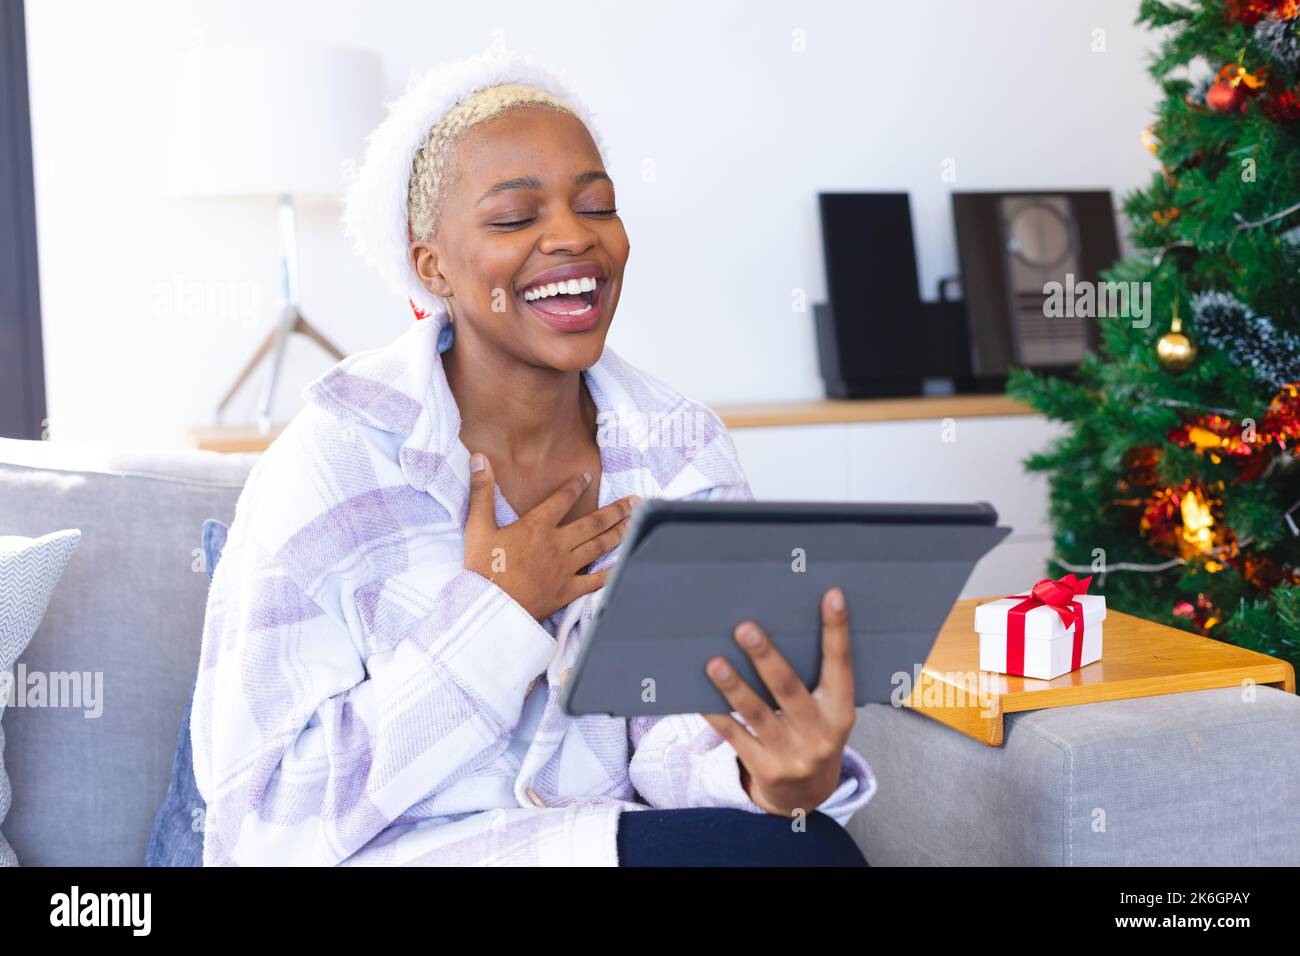 Glückliche afroamerikanische Frau mit weihnachtsmann-Hut, die ein Tablet für Videoanrufe benutzt Stockfoto